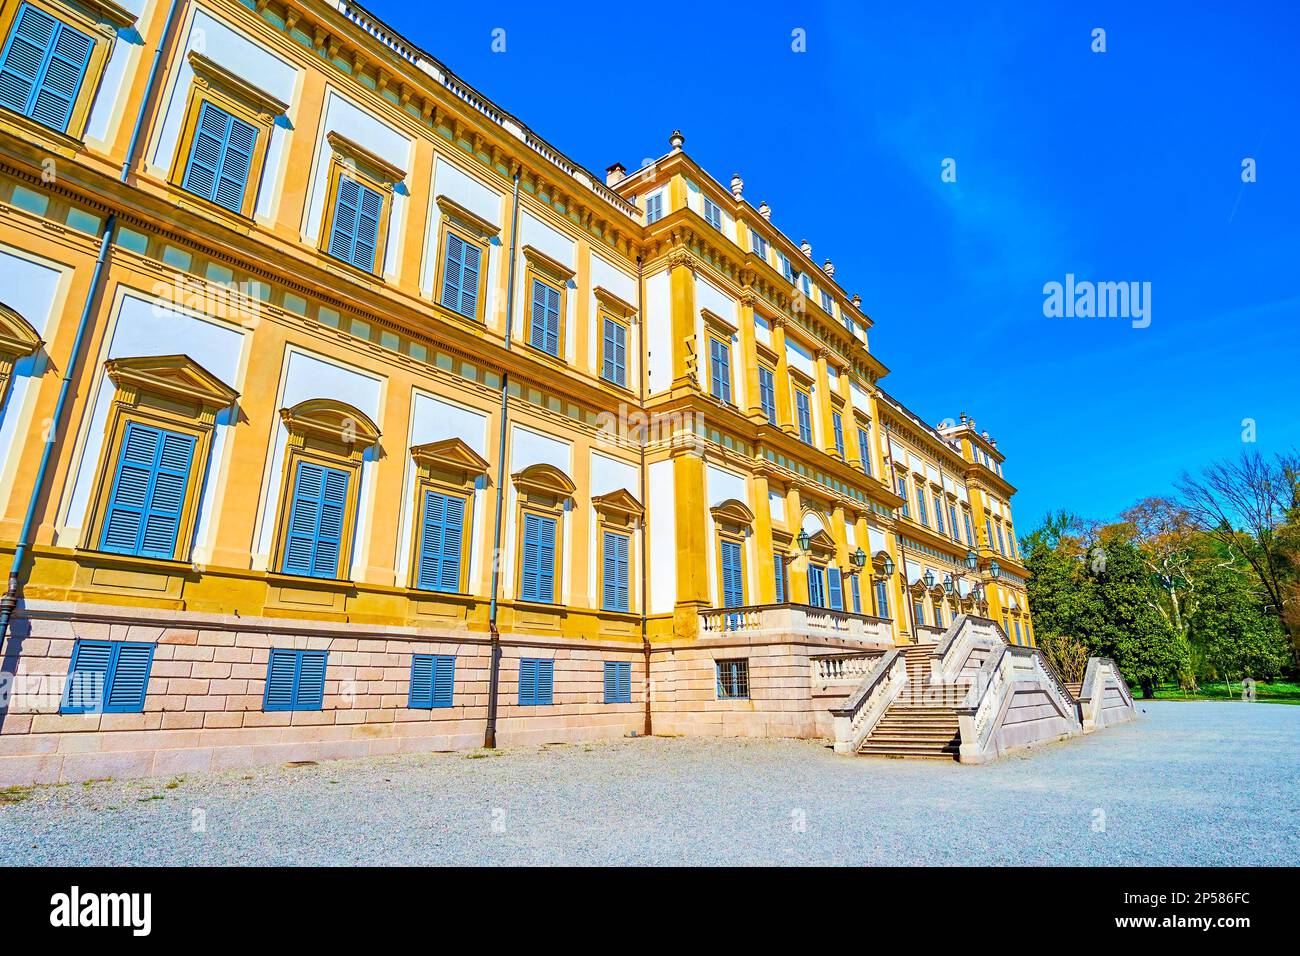 Fassade der Villa reale di Monza (Königliche Villa von Monza), der ehemaligen Residenz der Monarchen-Familie, Monza, Italien Stockfoto